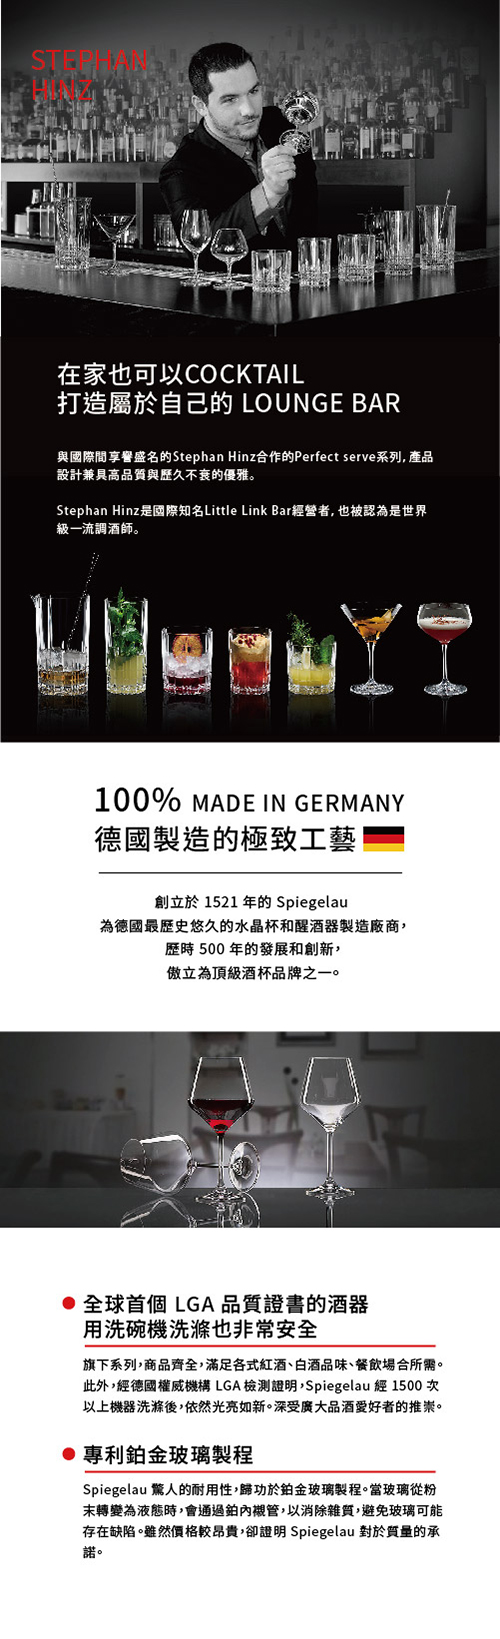 【5/4~5/10精選品牌8折優惠】德國Spiegelau Perfect Serve 完美系列 威士忌4件酒杯組